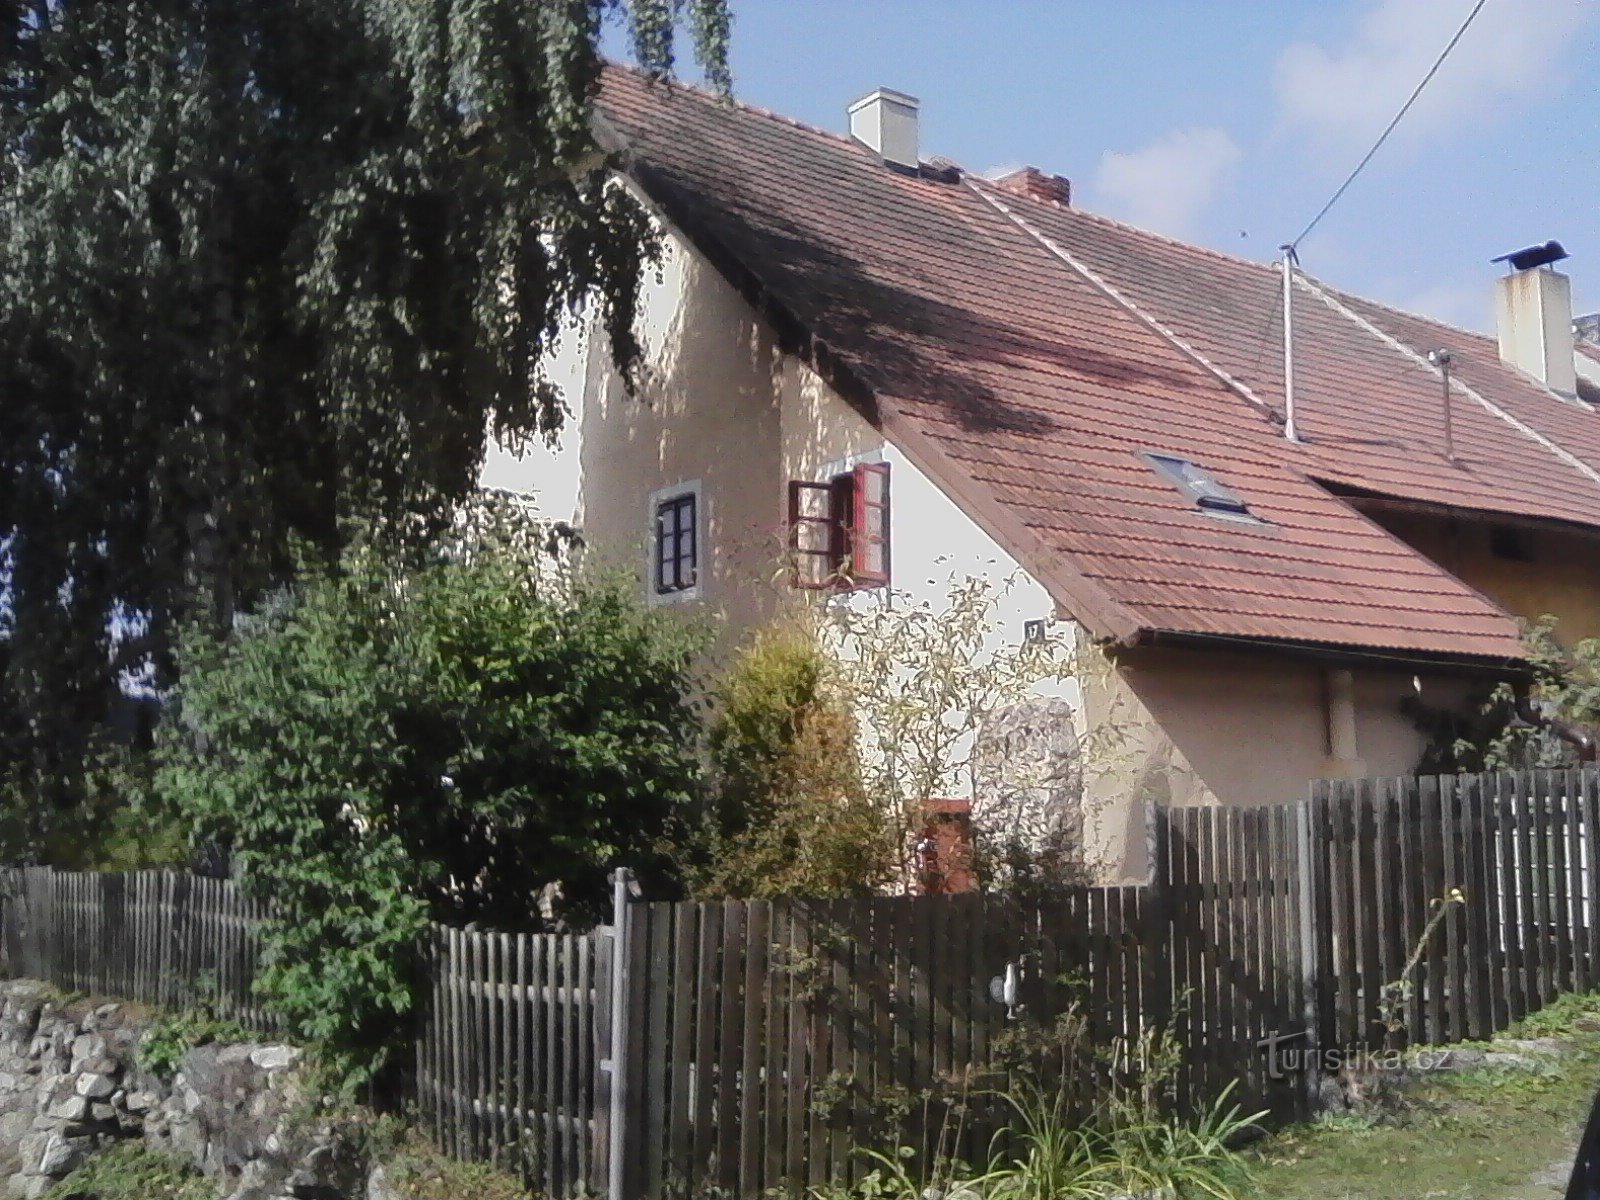 00. Vânătoare. Anterior, aici stătea reședința lorzilor Lovčick, aparent un castel de vânătoare,